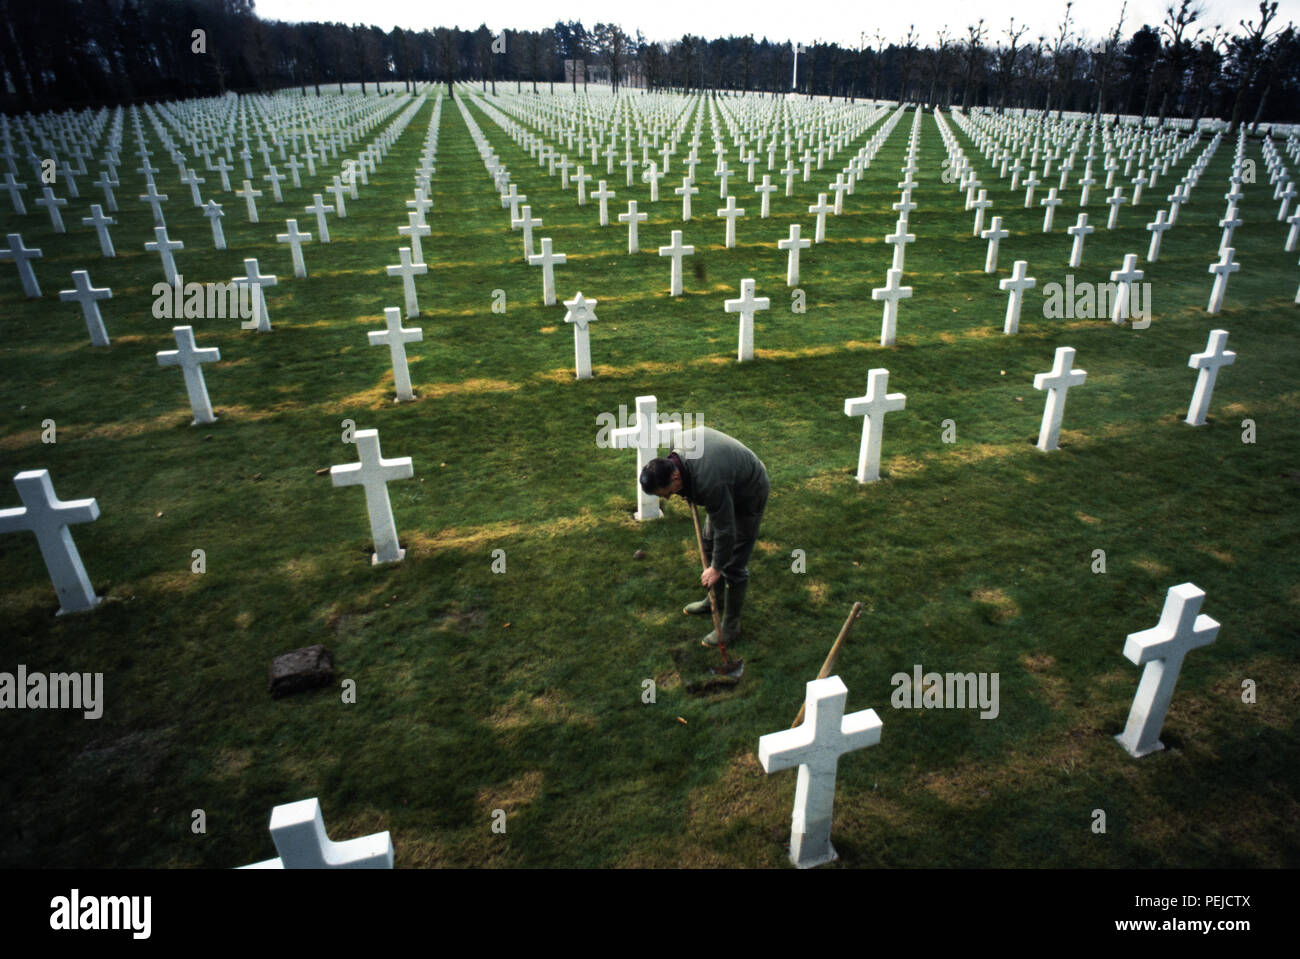 La PREMIÈRE GUERRE MONDIALE Oise-Aisne Cimetière Américain. 1985 L'Oise-Aisne American Cemetery and Memorial est un cimetière militaire américain dans le nord de la France. Trace un cadre d contient les tombes de 6 012 soldats américains qui sont morts en combattant dans cette région au cours de la Première Guerre mondiale, 597 n'étaient pas identifiés, ainsi qu'un monument de 241 Américains qui ont été portés disparus au cours de batailles dans la même région et dont les restes n'ont jamais été retrouvés. L'Oise-Aisne American Cemetery and Memorial se trouve à un mille et demi à l'est de Fère-en-tardenois, Aisne, Picardie, France et à environ 14 miles (23 km) au nord-est de C Banque D'Images